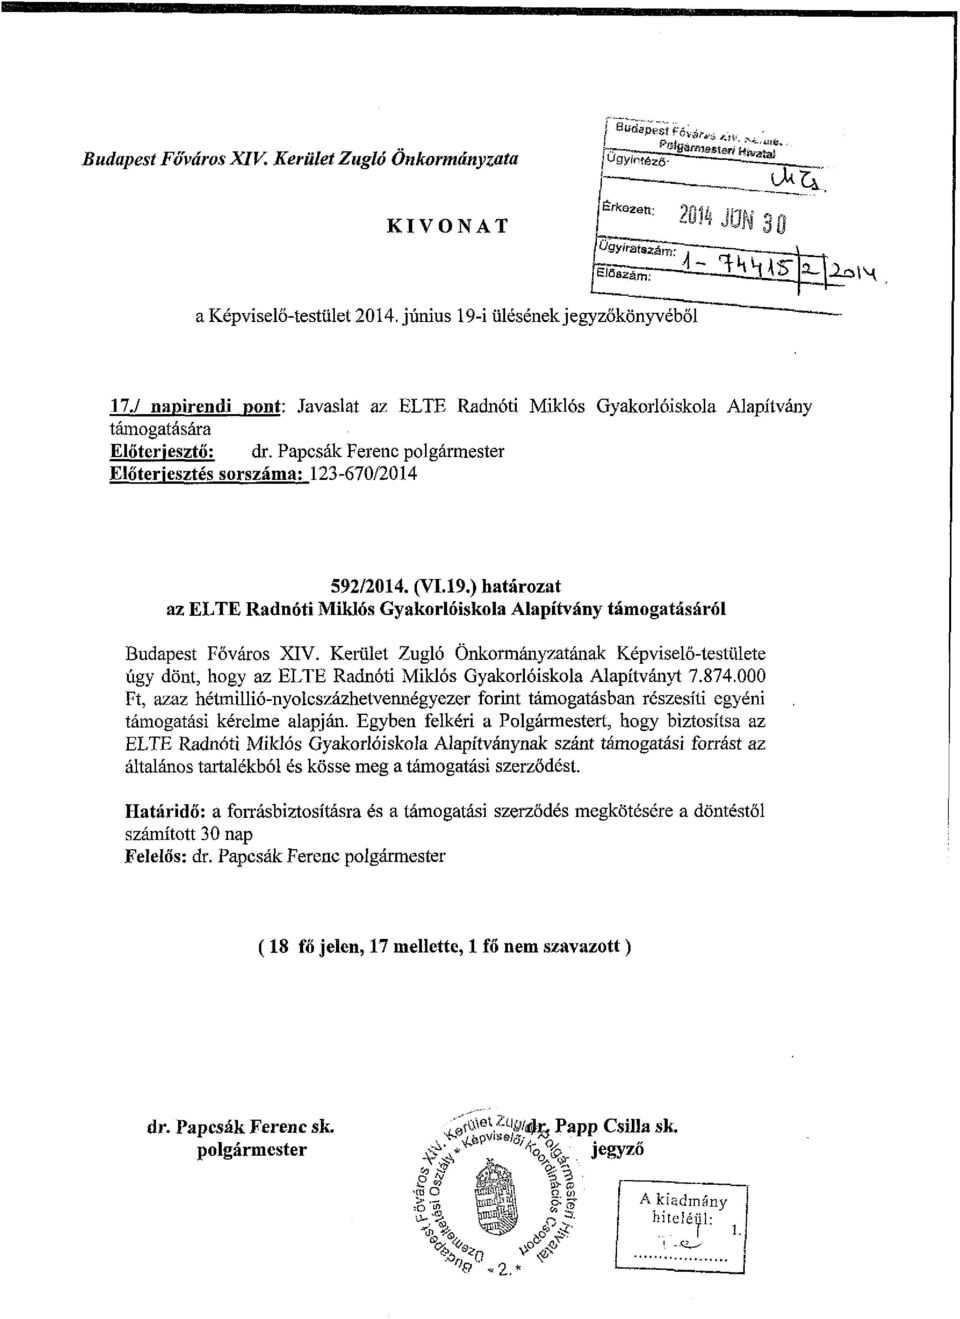 ) határozat az ELTE Radnóti Miklós Gyakorlóiskola Alapítvány támogatásáról Budapest Főváros XIV.